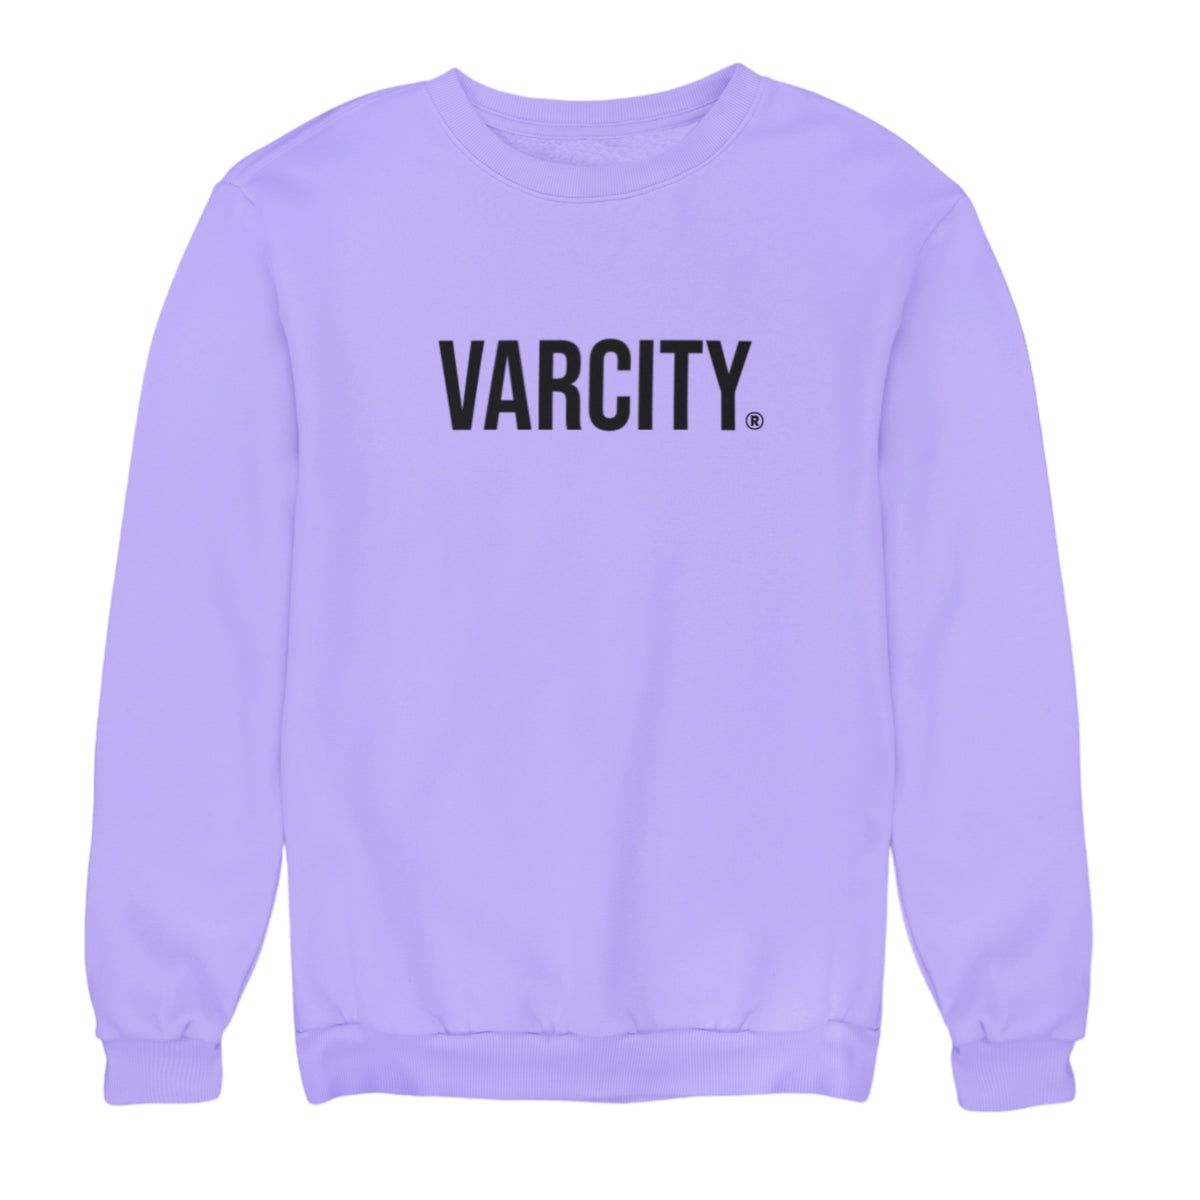 Varcity ® Fundamentals Statement Sweatshirt Lavender